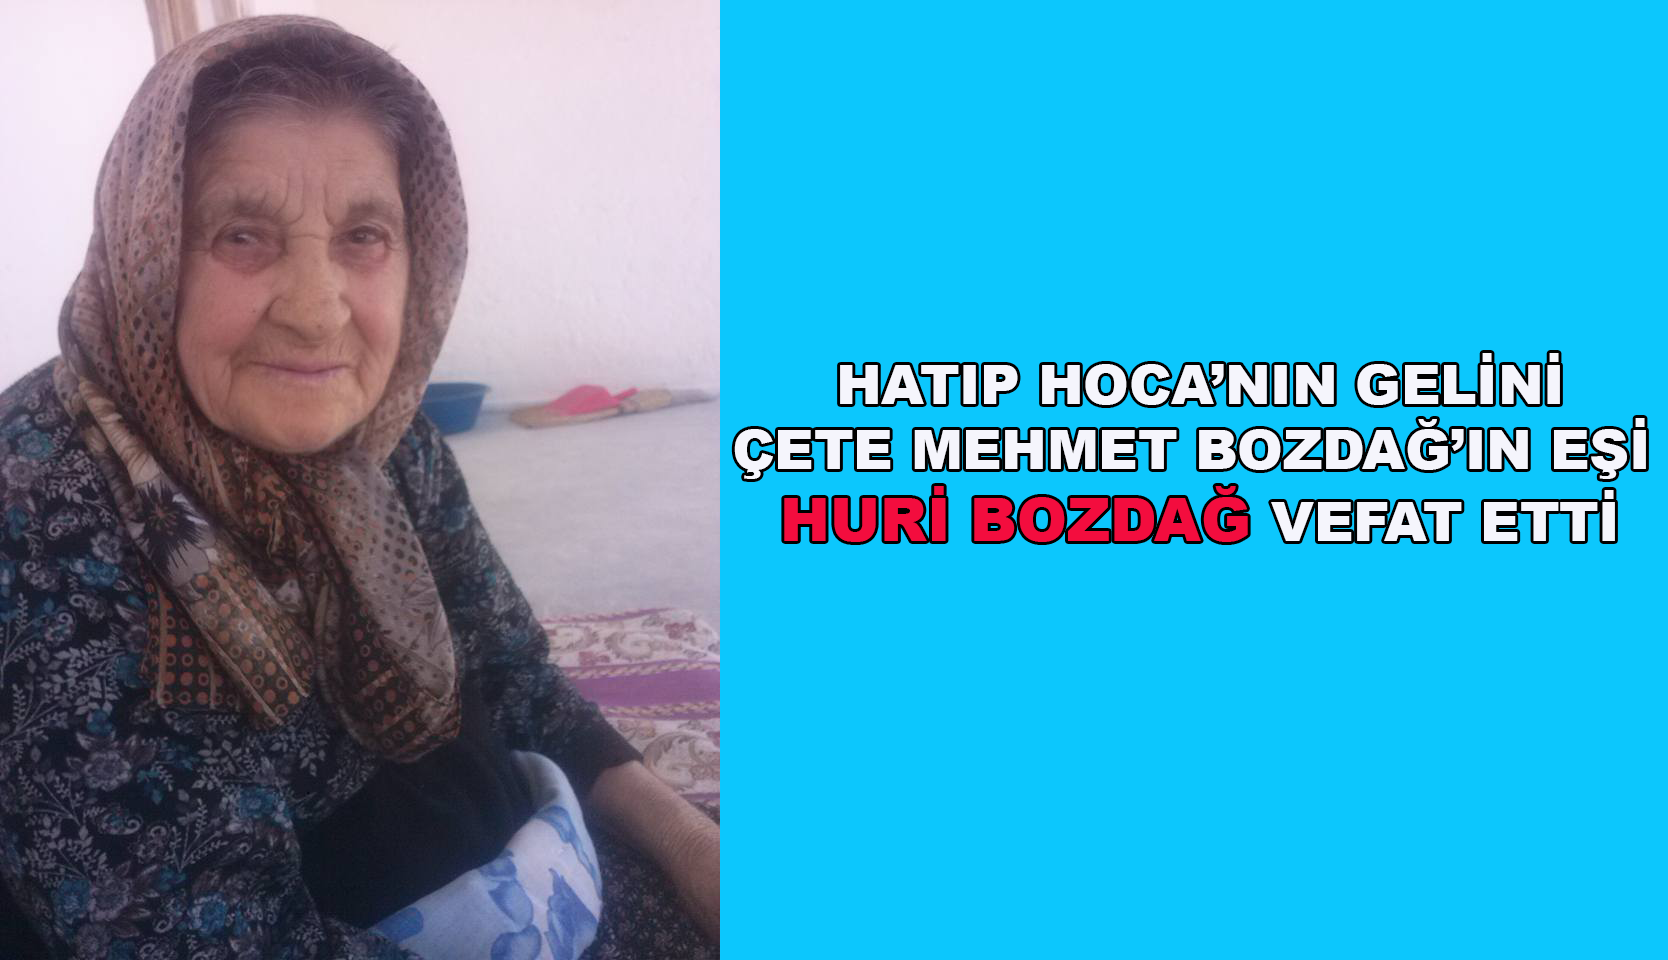 Çete Mehmet Bozdağ’ın Eşi Huri Bozdağ vefat etti